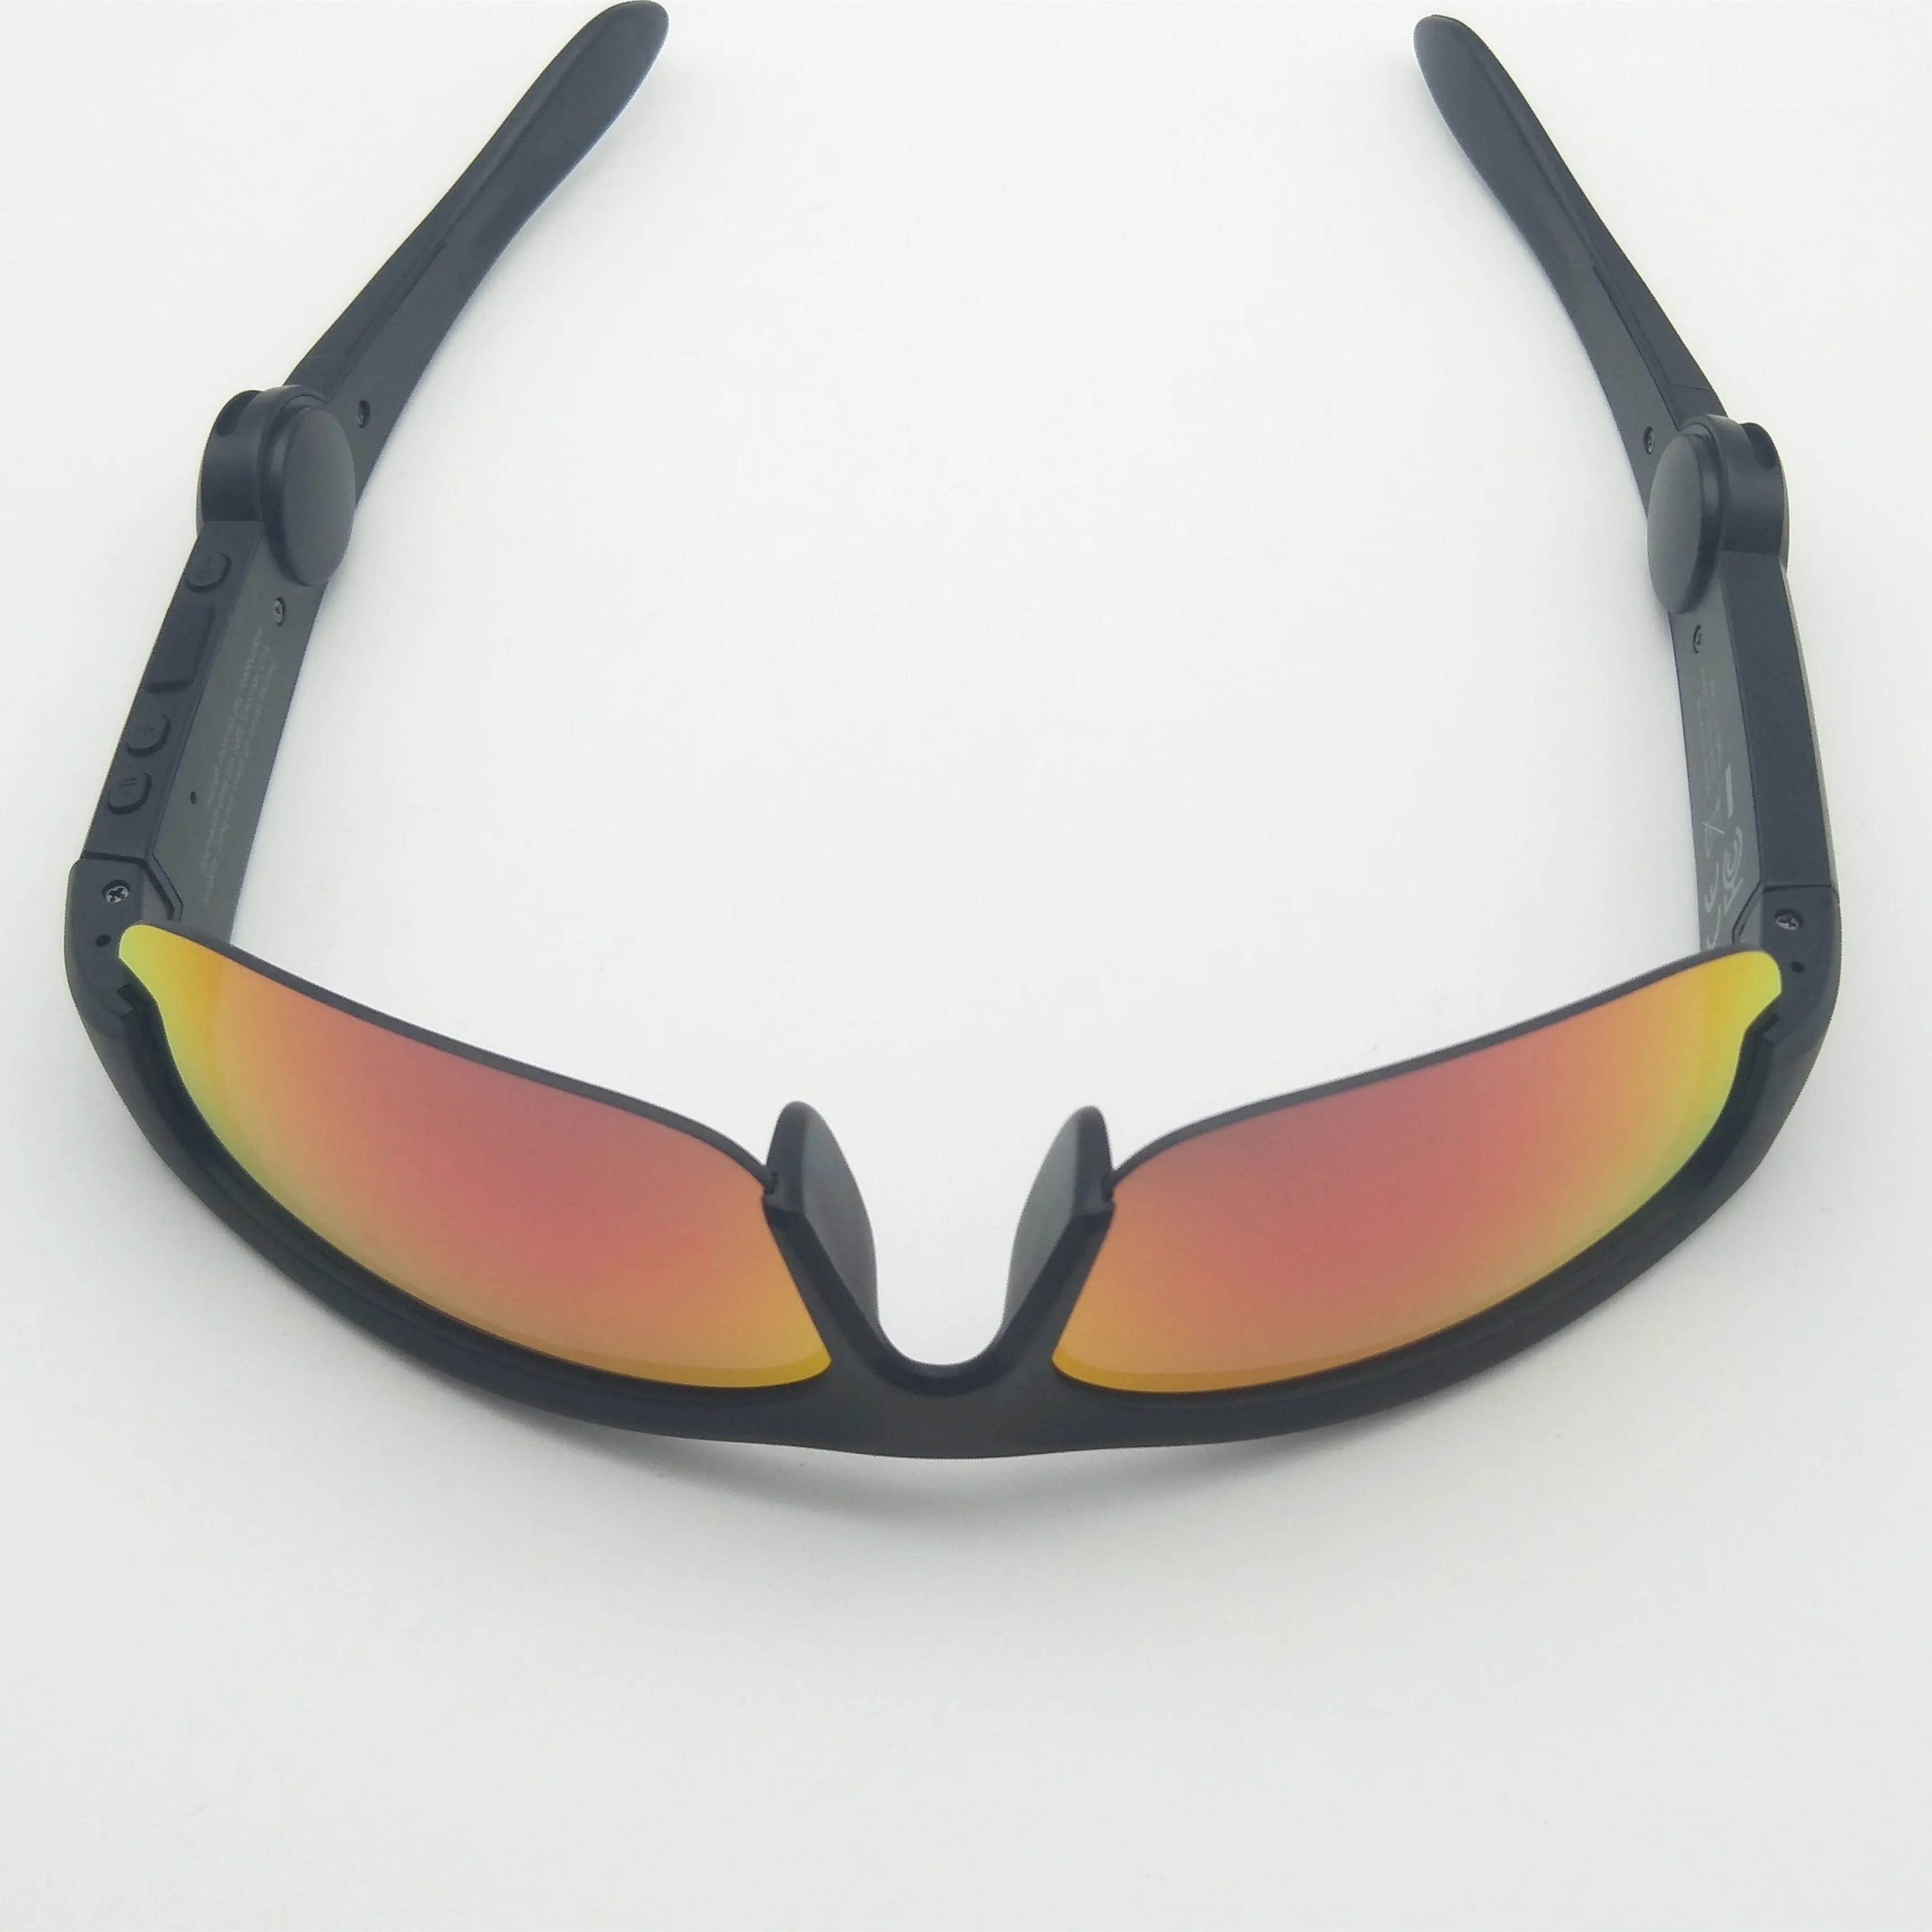 저렴한 패션 선글라스 최신 2020 남여 디자인 BT 4.1 스마트 UV400 보호 선샤인 안경, 남성 및 여성용